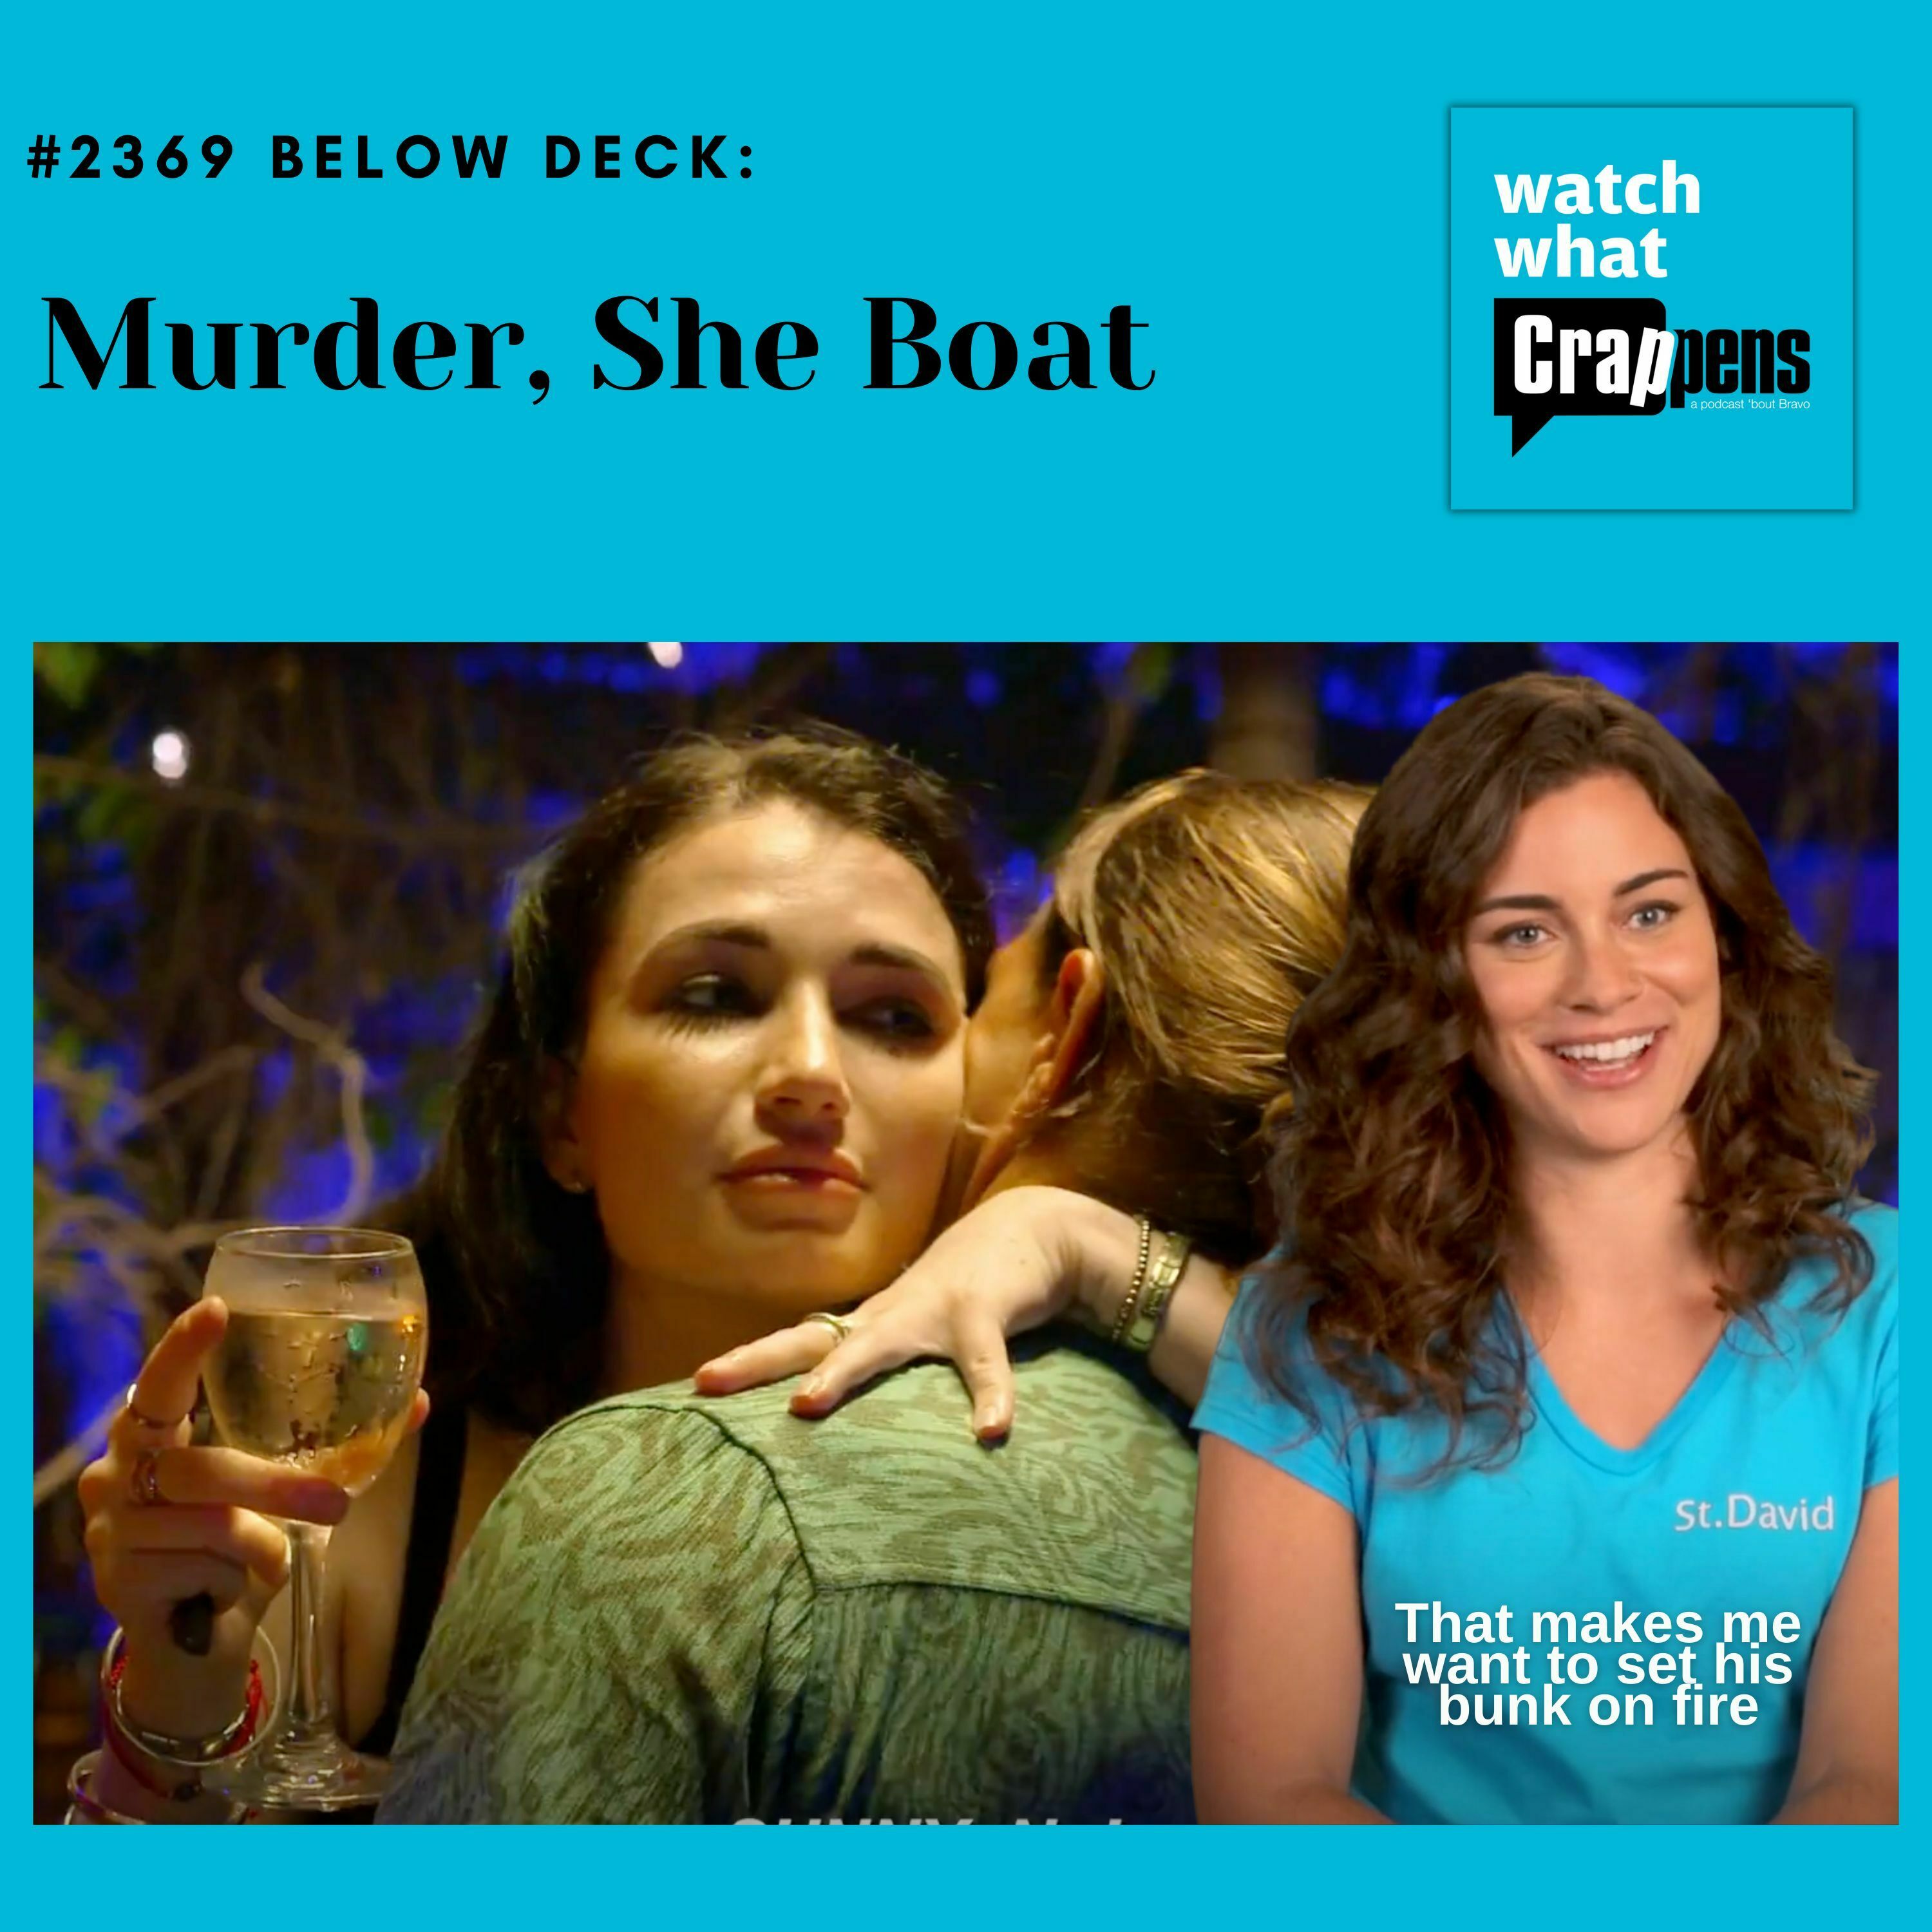 #2369 Below Deck: Murder, She Boat